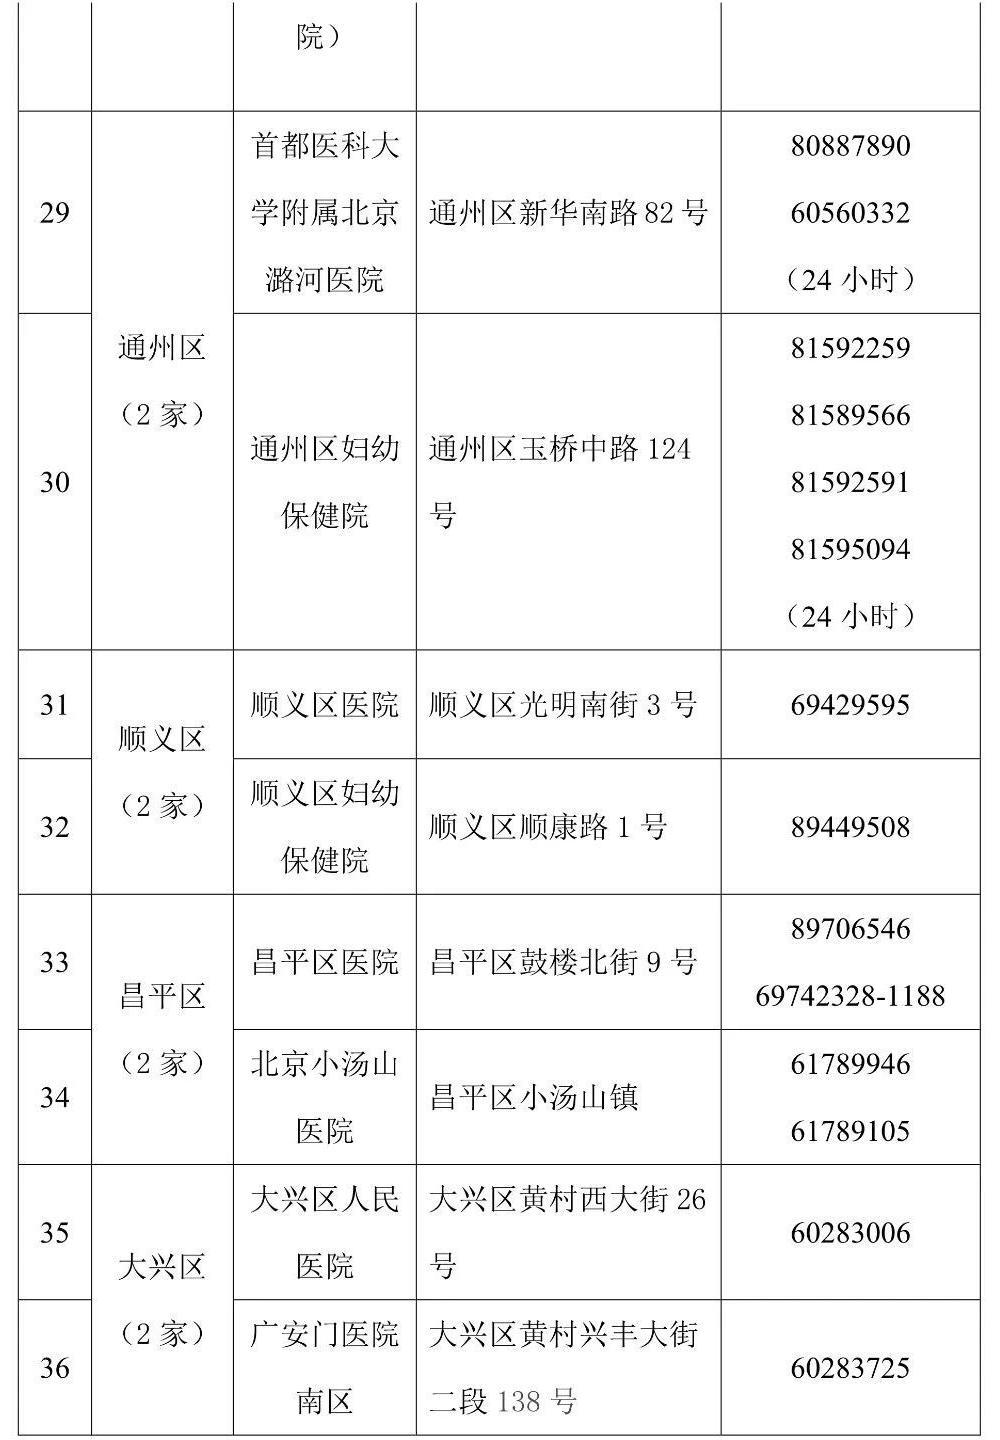 北京发布首批45家核酸检测电话预约服务公立医疗机构名录